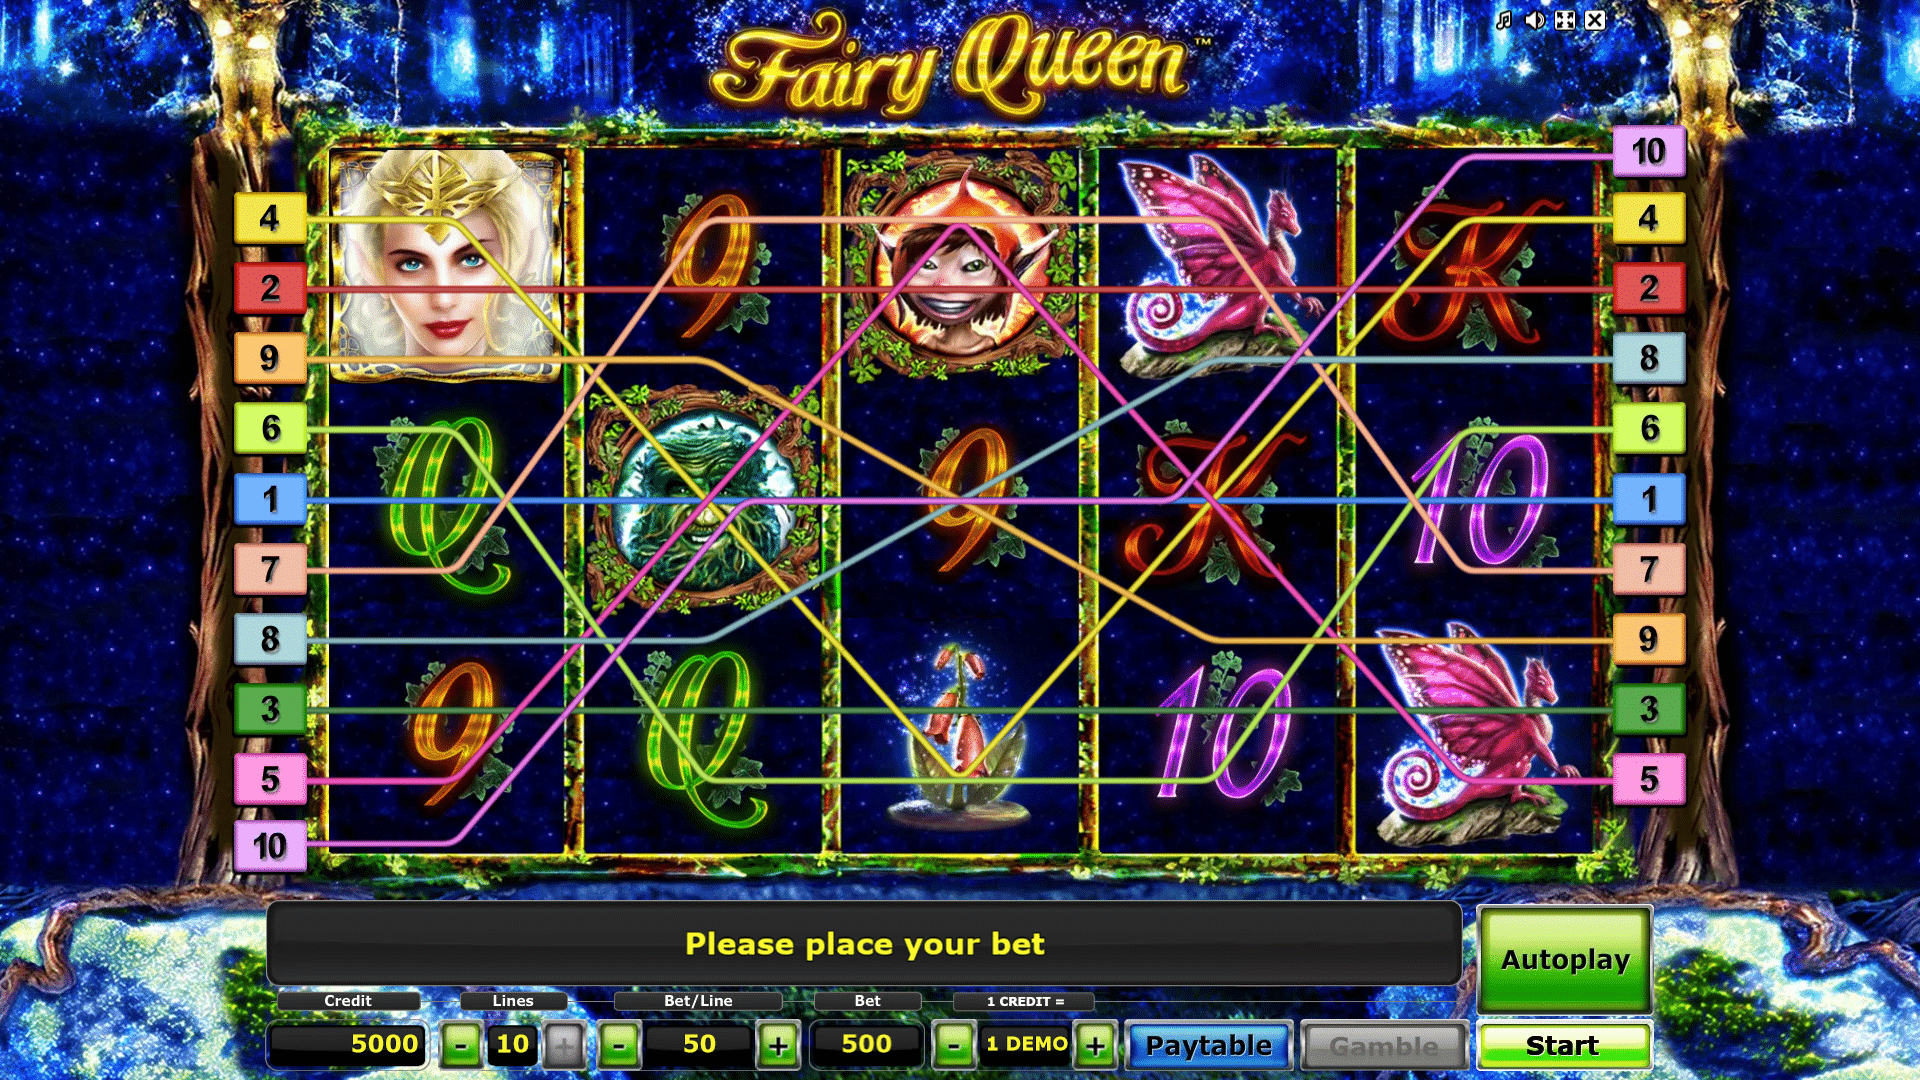 Griglia Principale della Slot gratis Fairy Queen